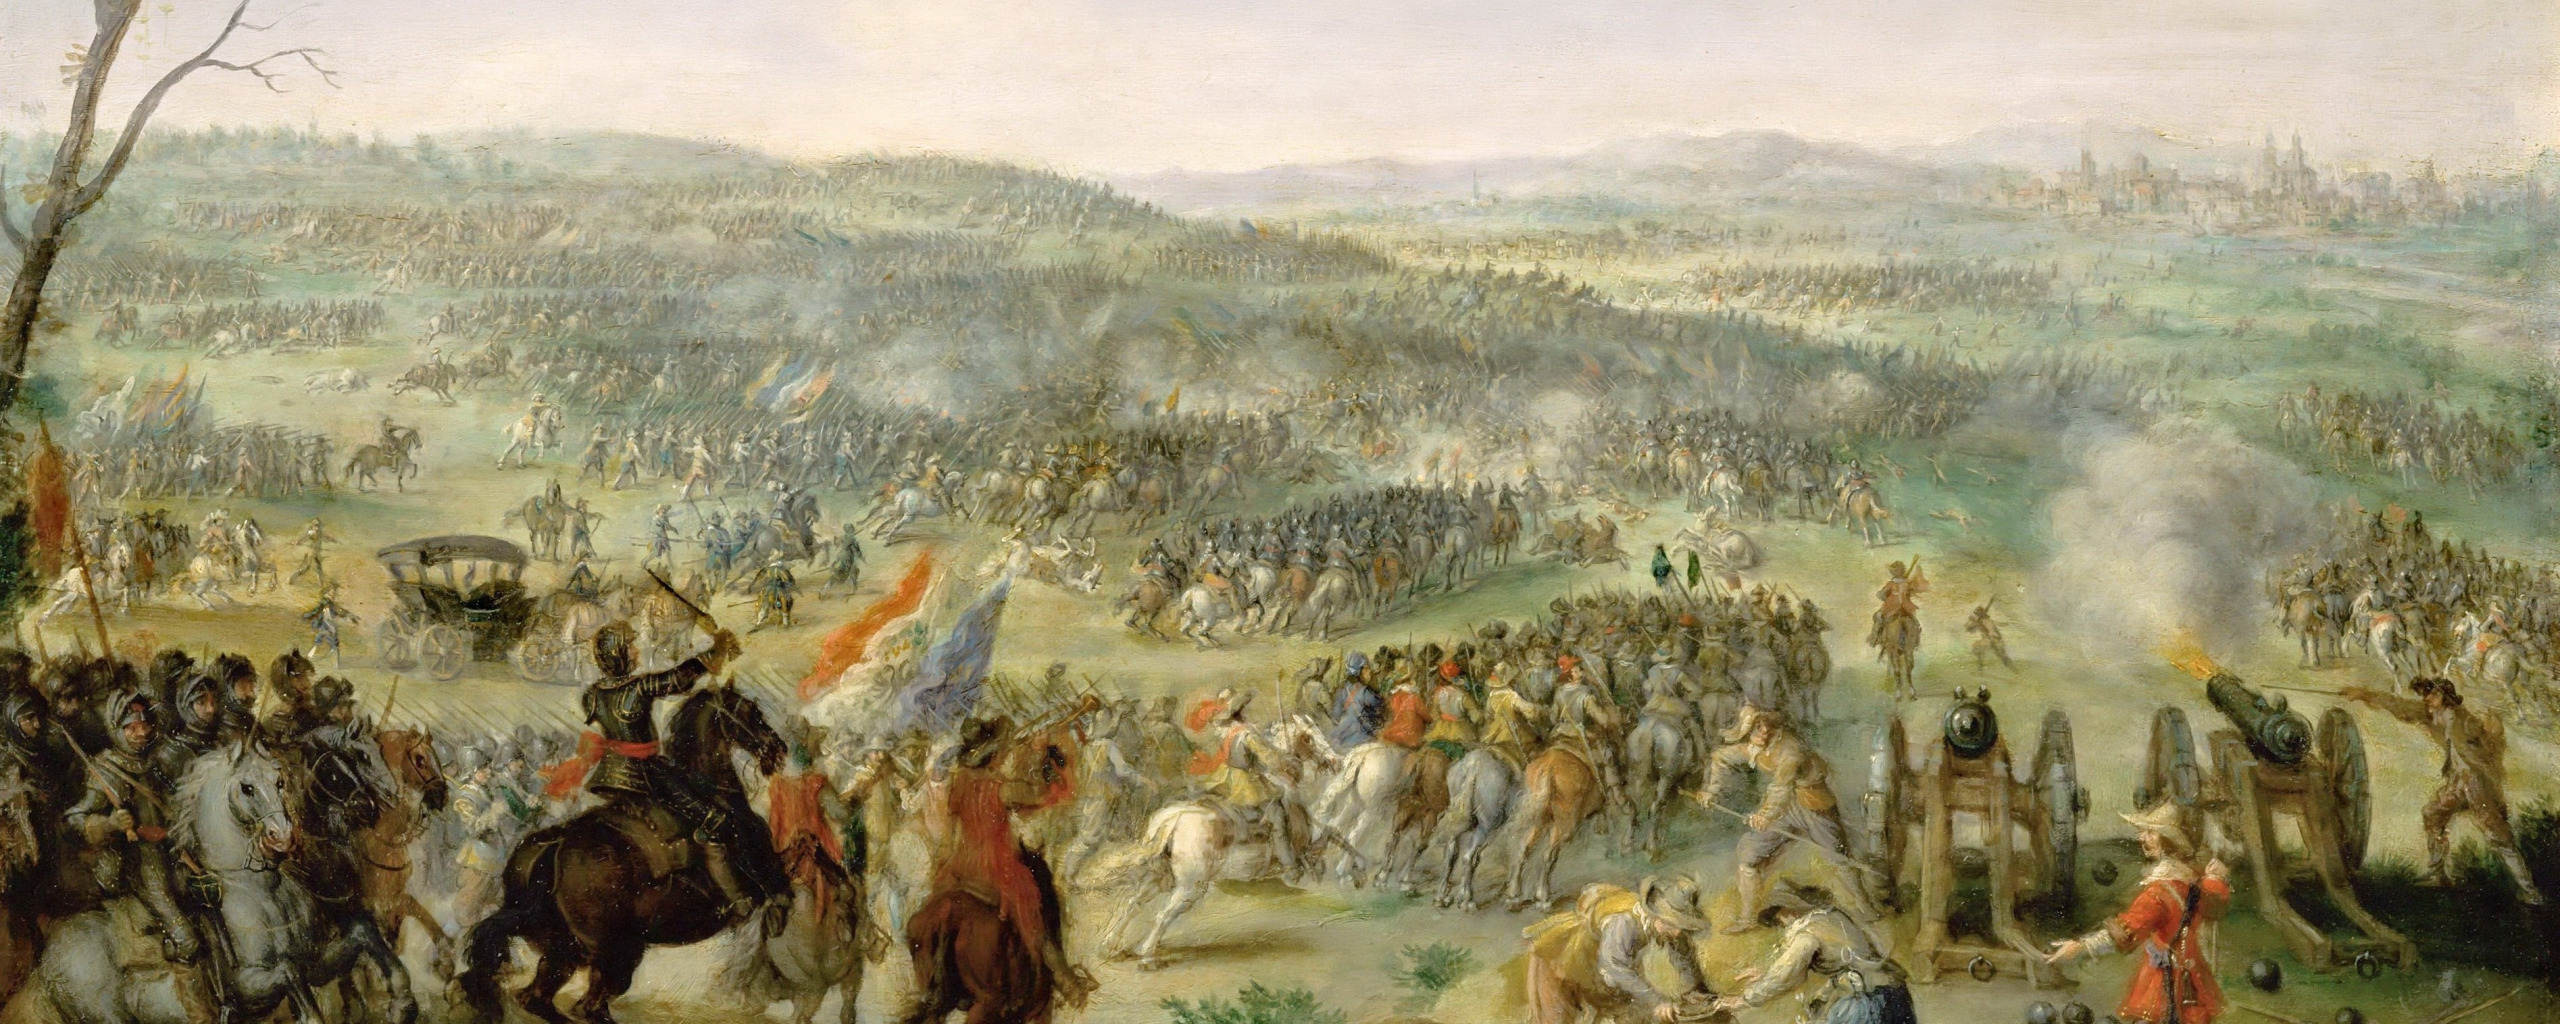 По итогам тридцатилетней войны габсбурги потерпели поражение. Ангорская битва. Битва Рокруа 1643. Битва при Анкаре 1402.